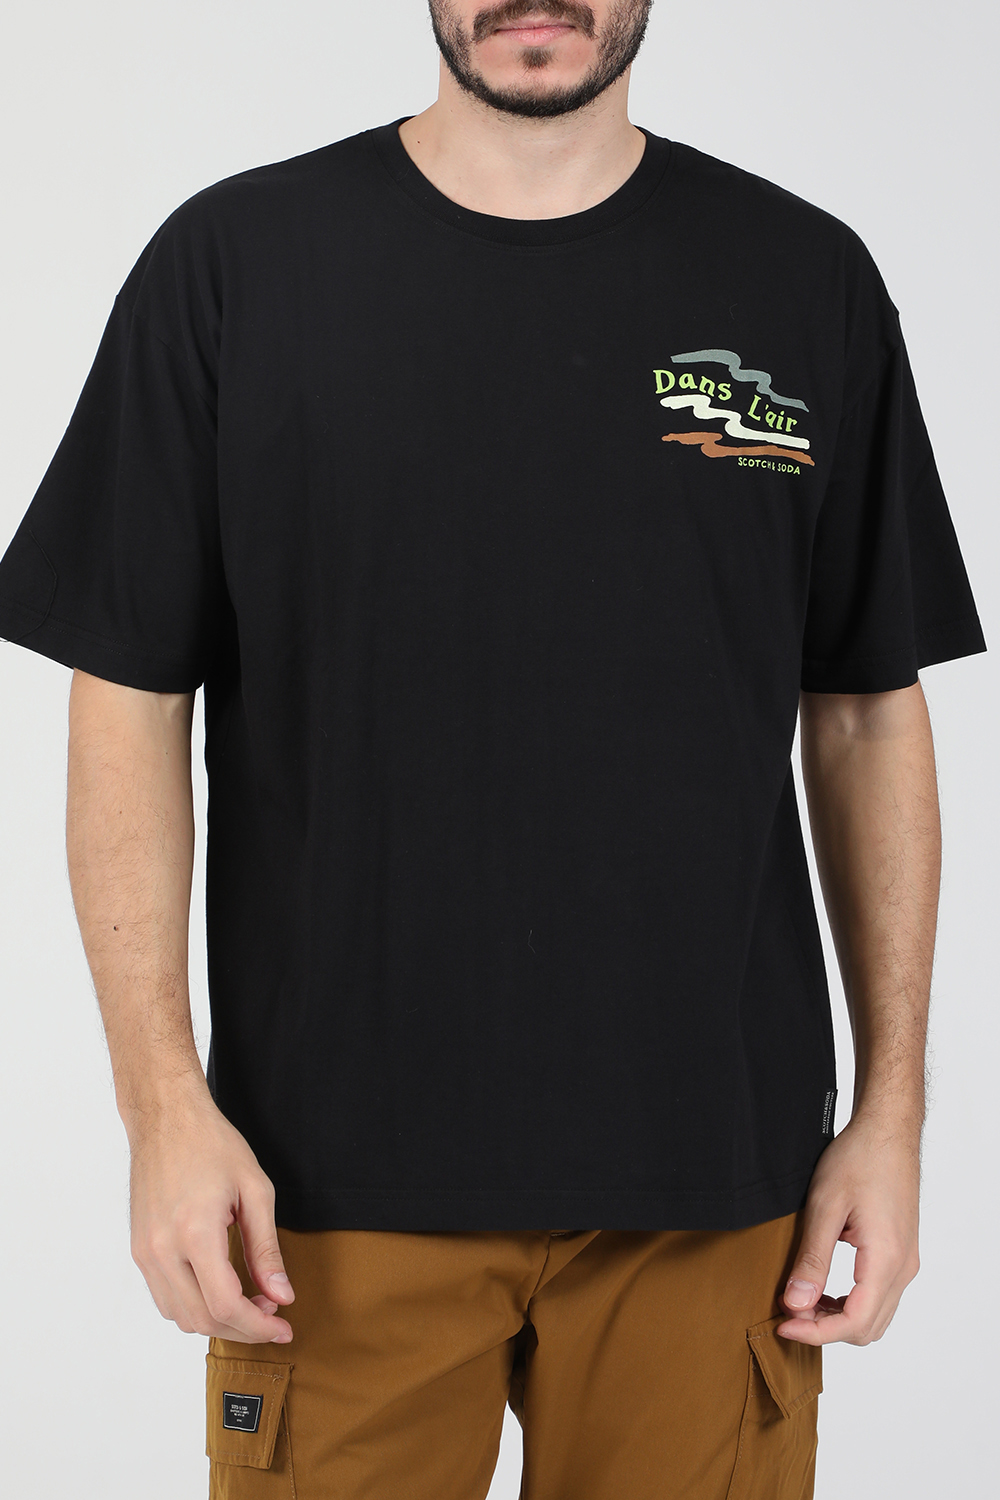 SCOTCH & SODA – Ανδρική κοντομάνικη μπλούζα SCOTCH & SODA μαύρη 1821051.0-7171